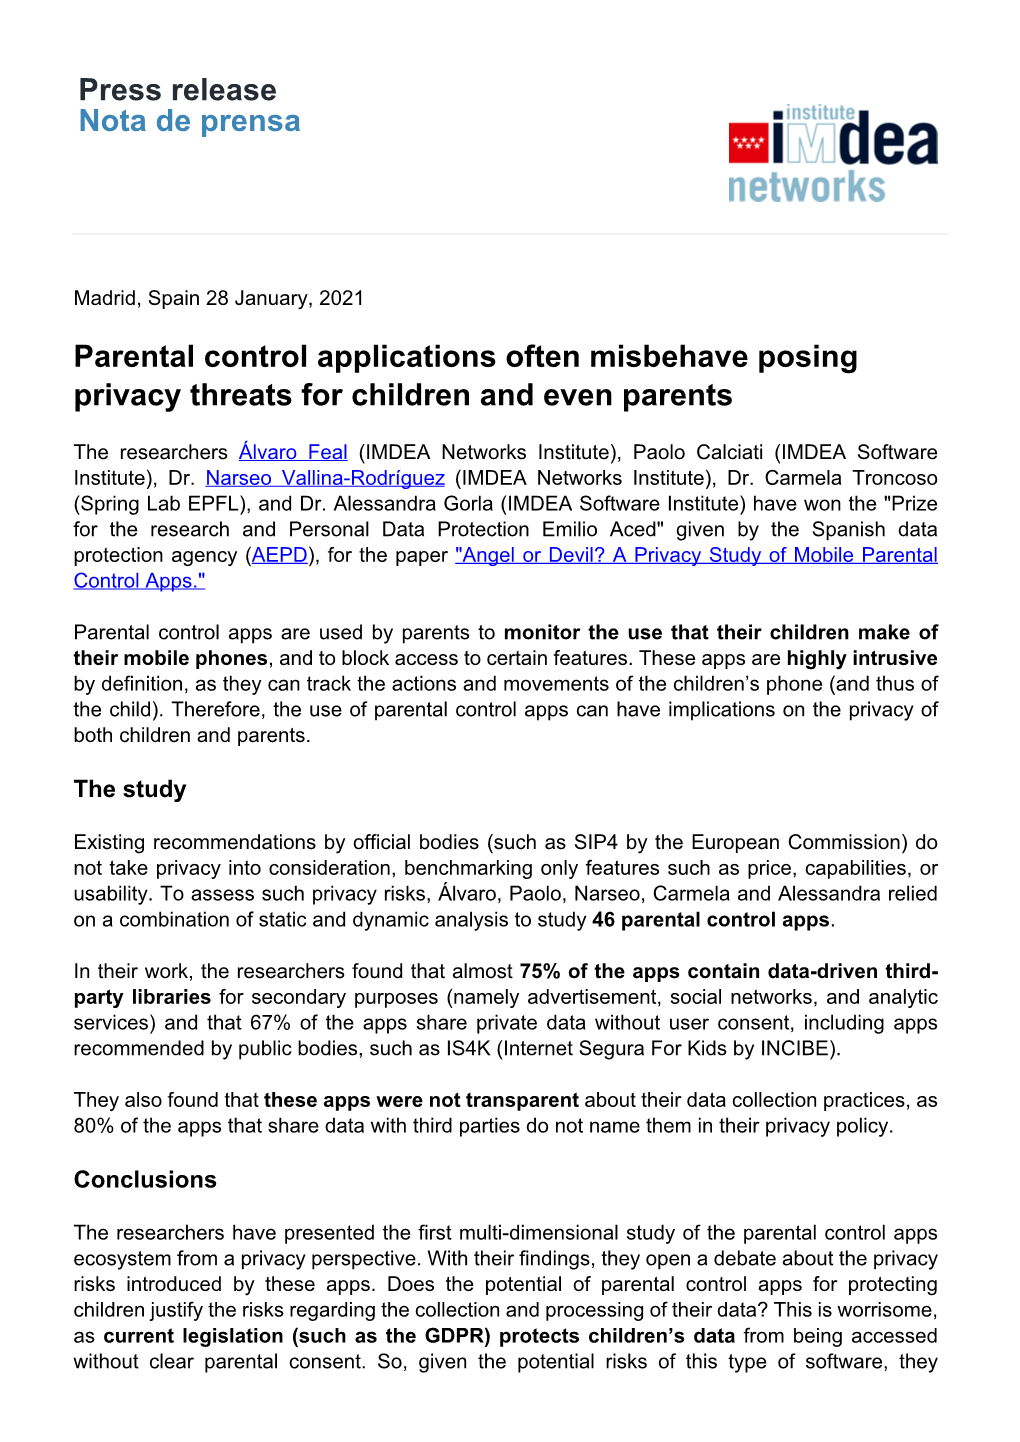 Press Release Nota De Prensa Parental Control